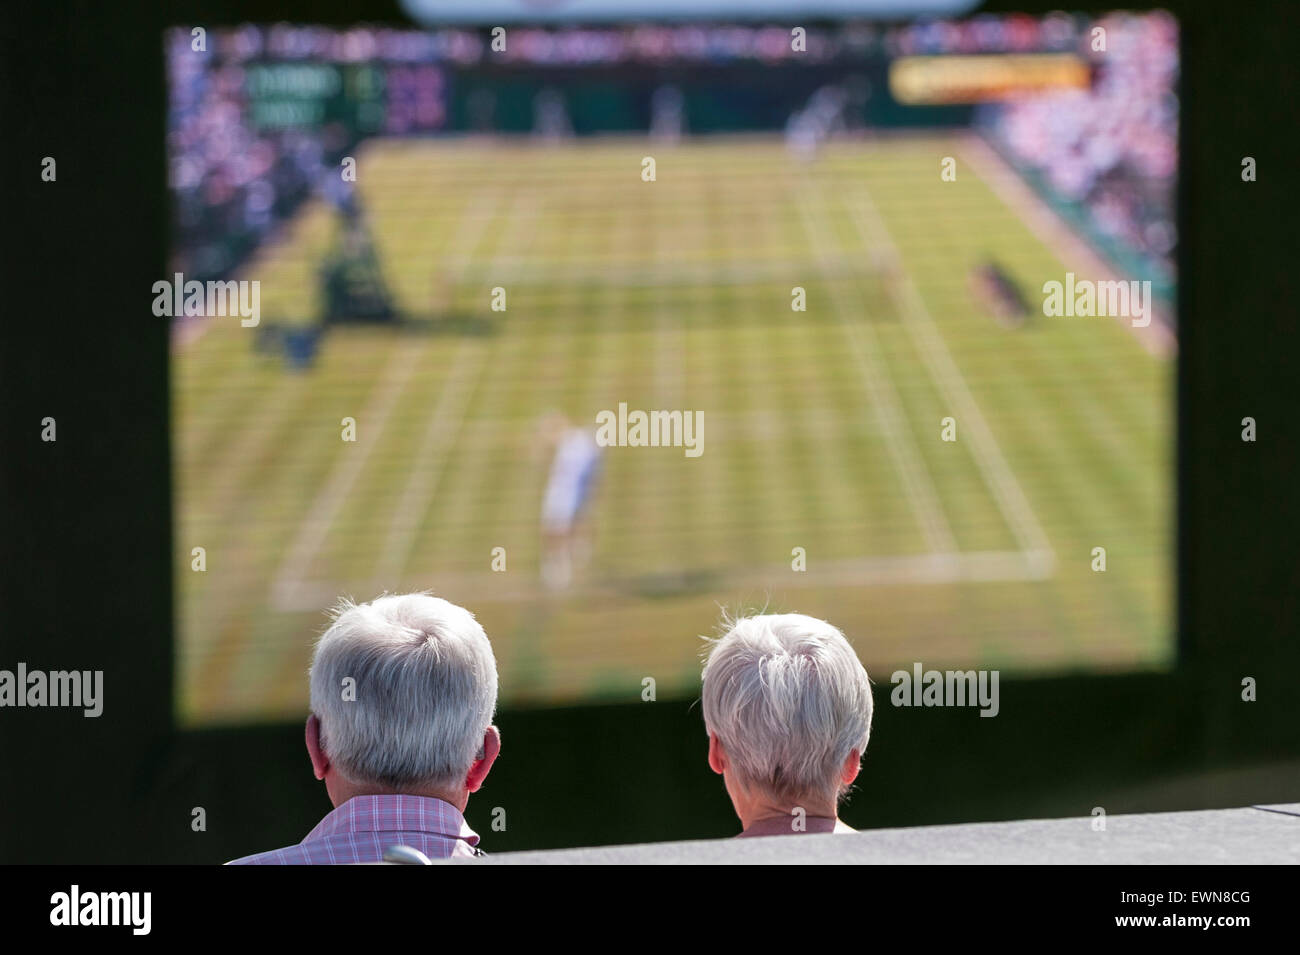 Londres, Royaume-Uni. 29 juin 2015. Un couple regarder le premier jour du tournoi de tennis de Wimbledon en direct diffusée gratuitement sur un écran géant à l'écope, à l'extérieur de l'Hôtel de Ville. Crédit : Stephen Chung / Alamy Live News Banque D'Images